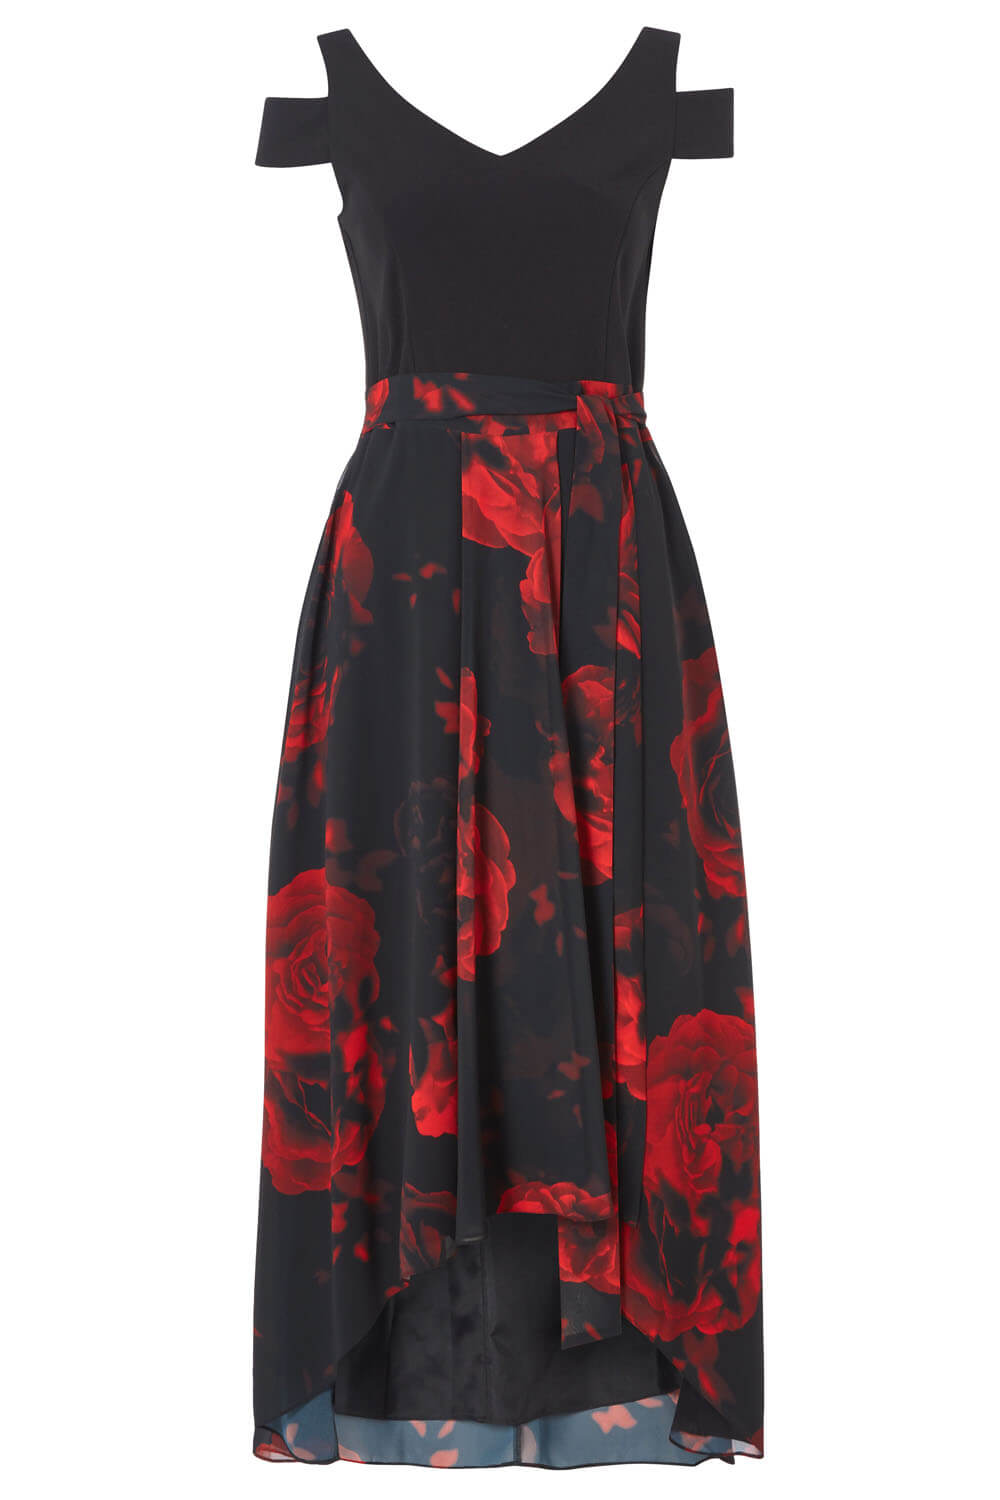 Black Floral Print Cold Shoulder Maxi Dress, Image 4 of 4